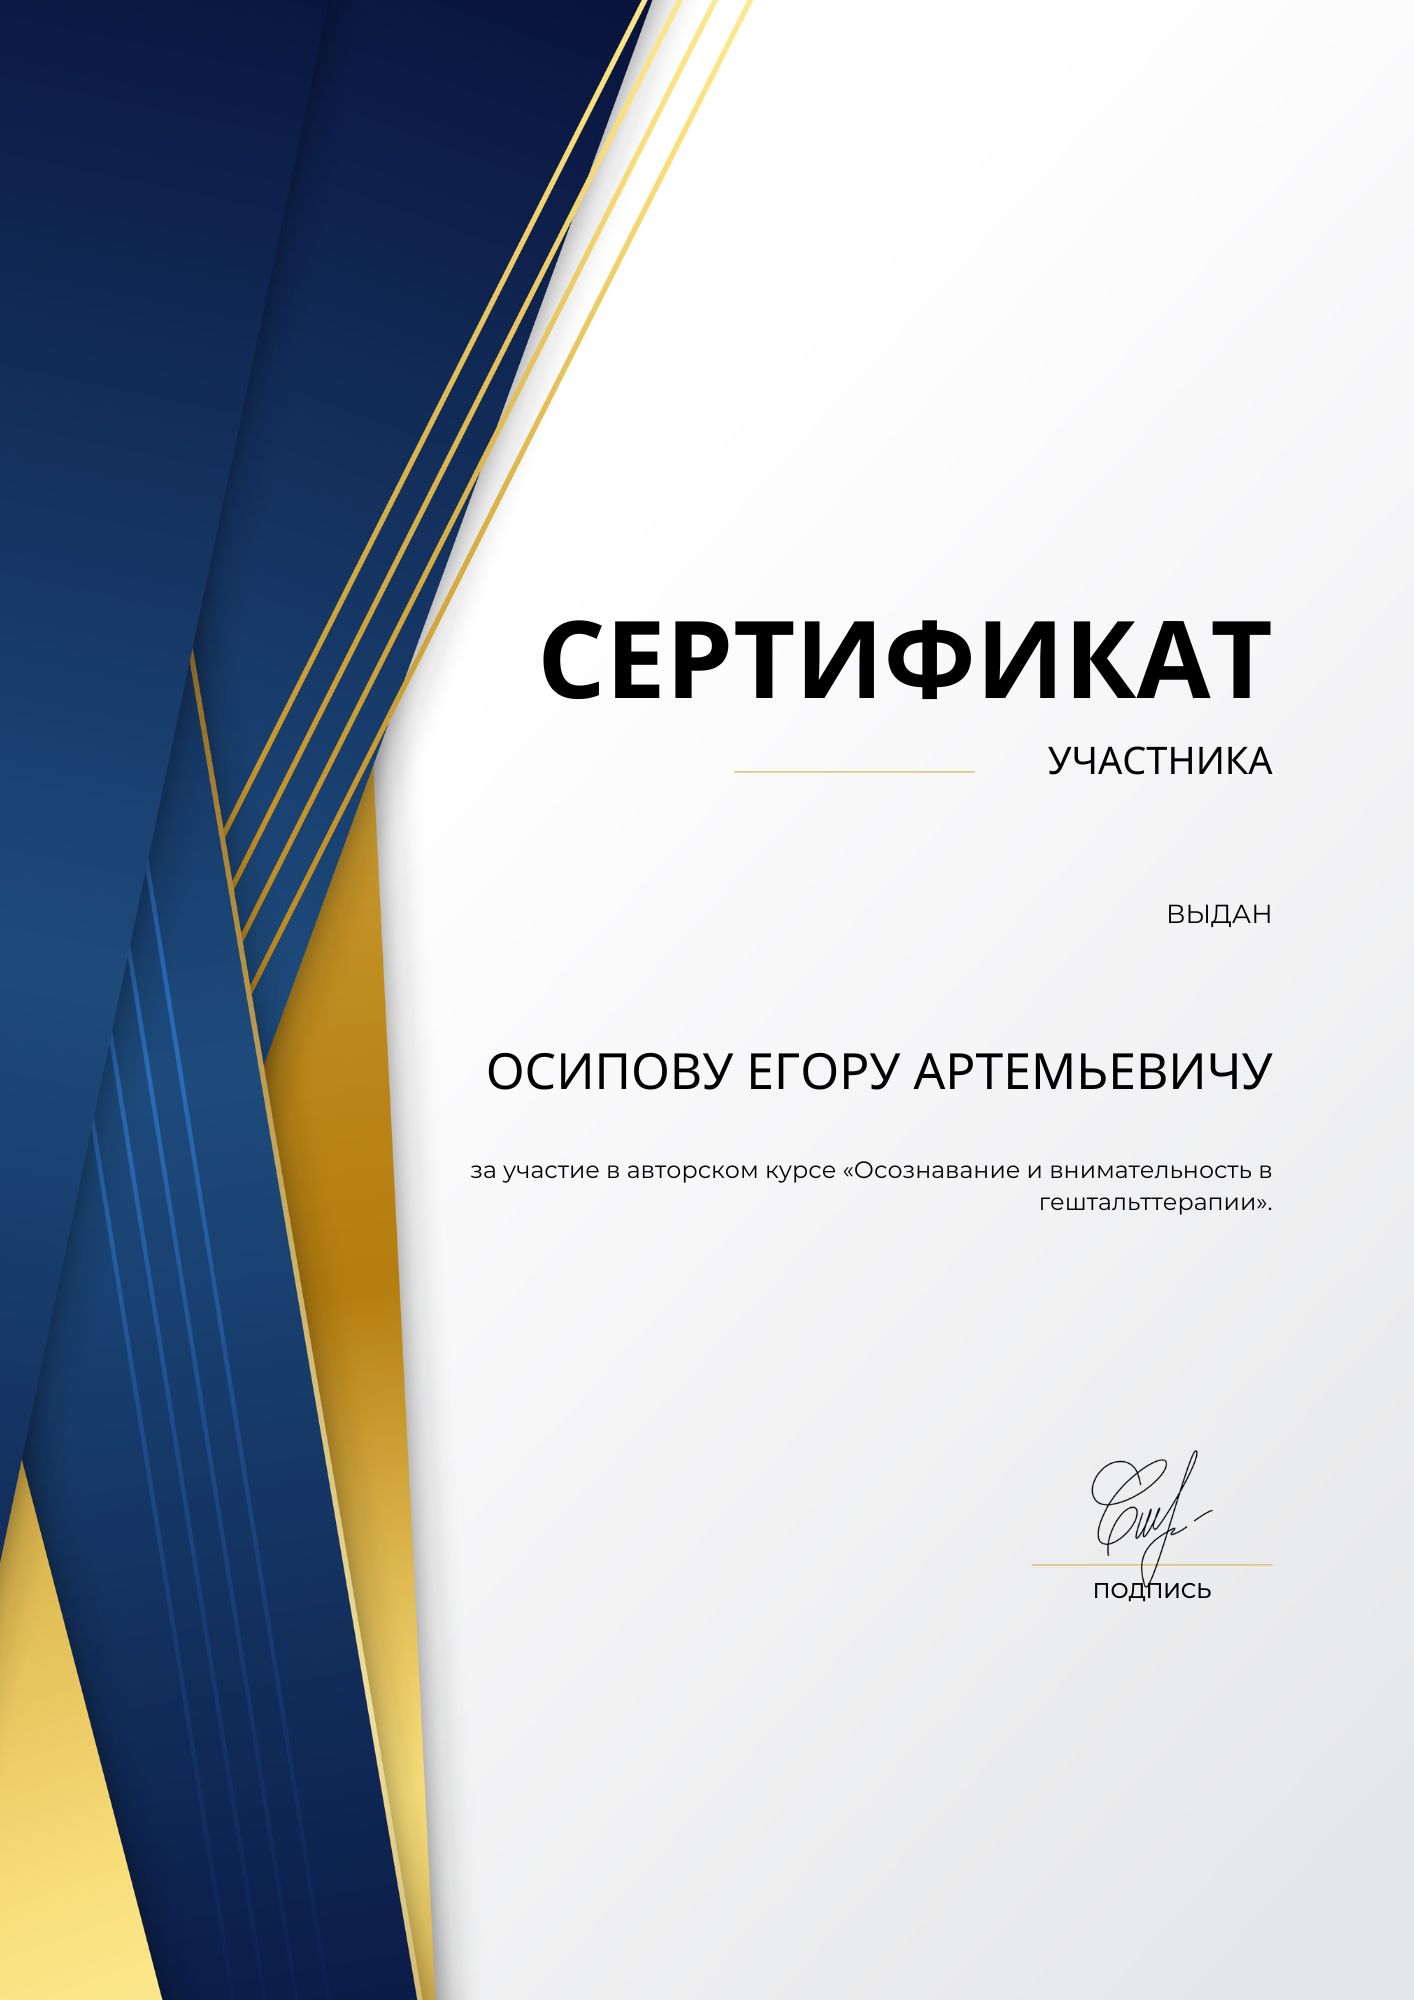 Фотография сертификата Осипова Егора Артемьевича за участие в авторском курсе